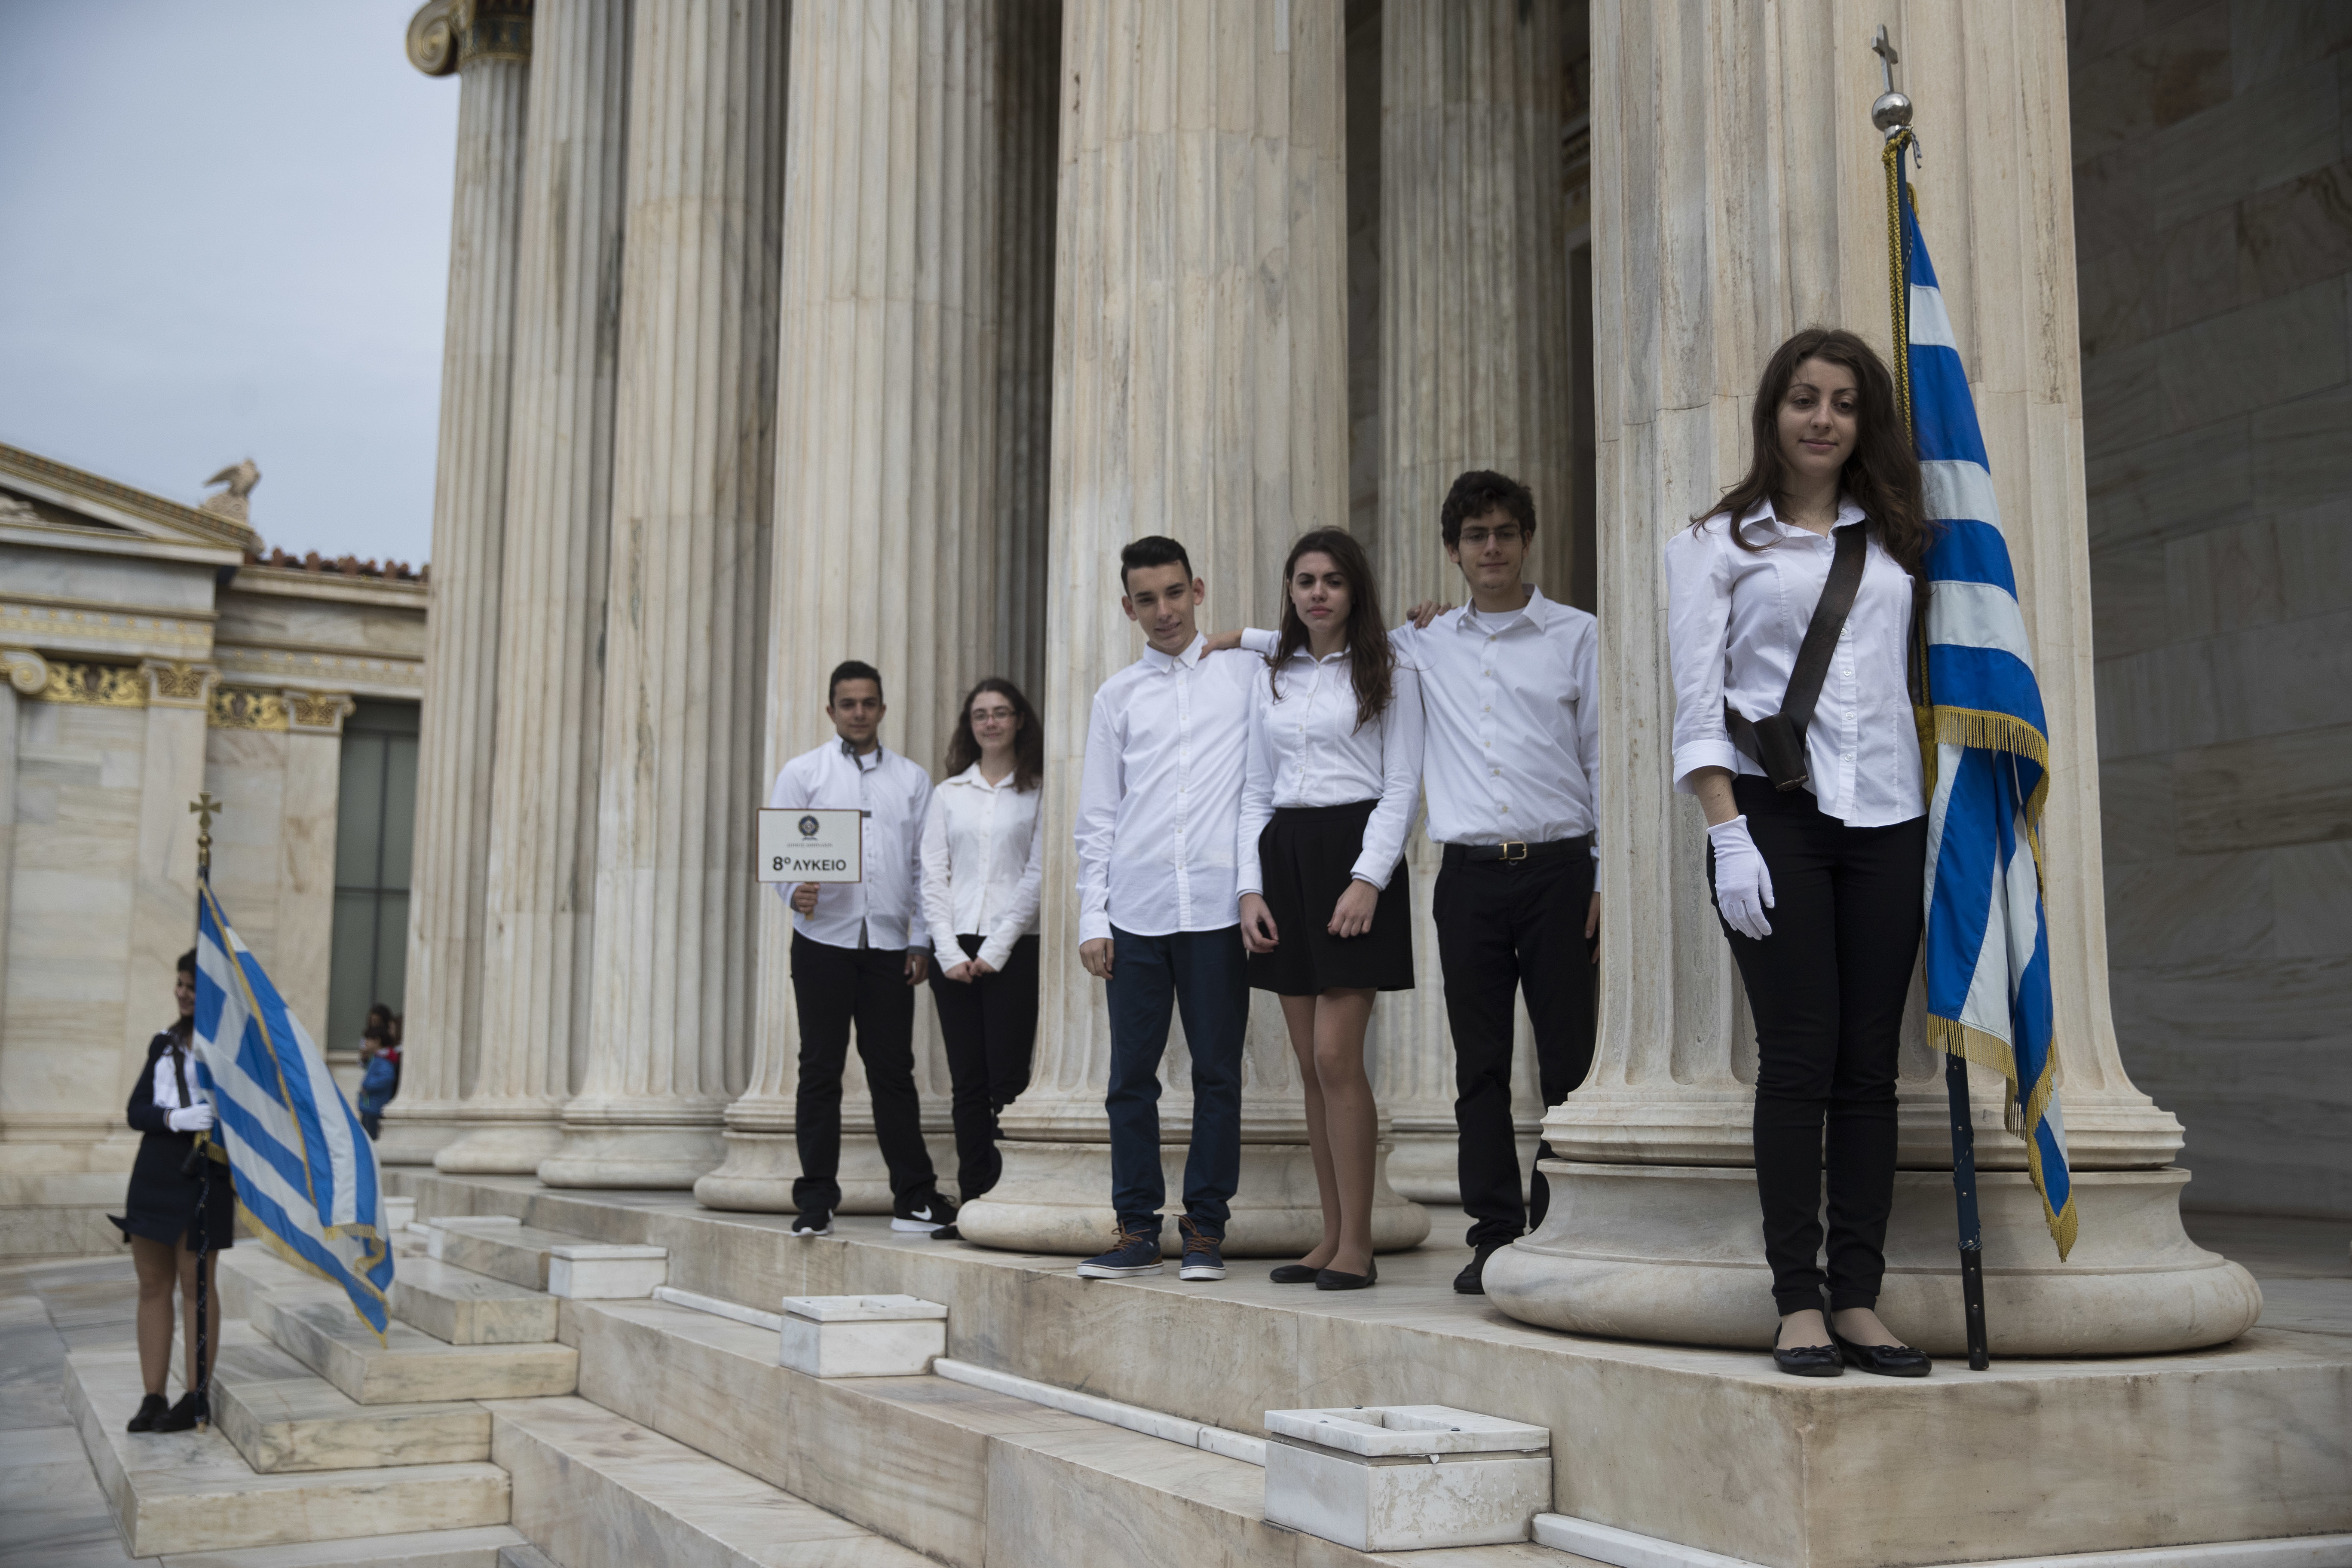 Гърция отбелязва националния си празник - деня ”ОХИ”